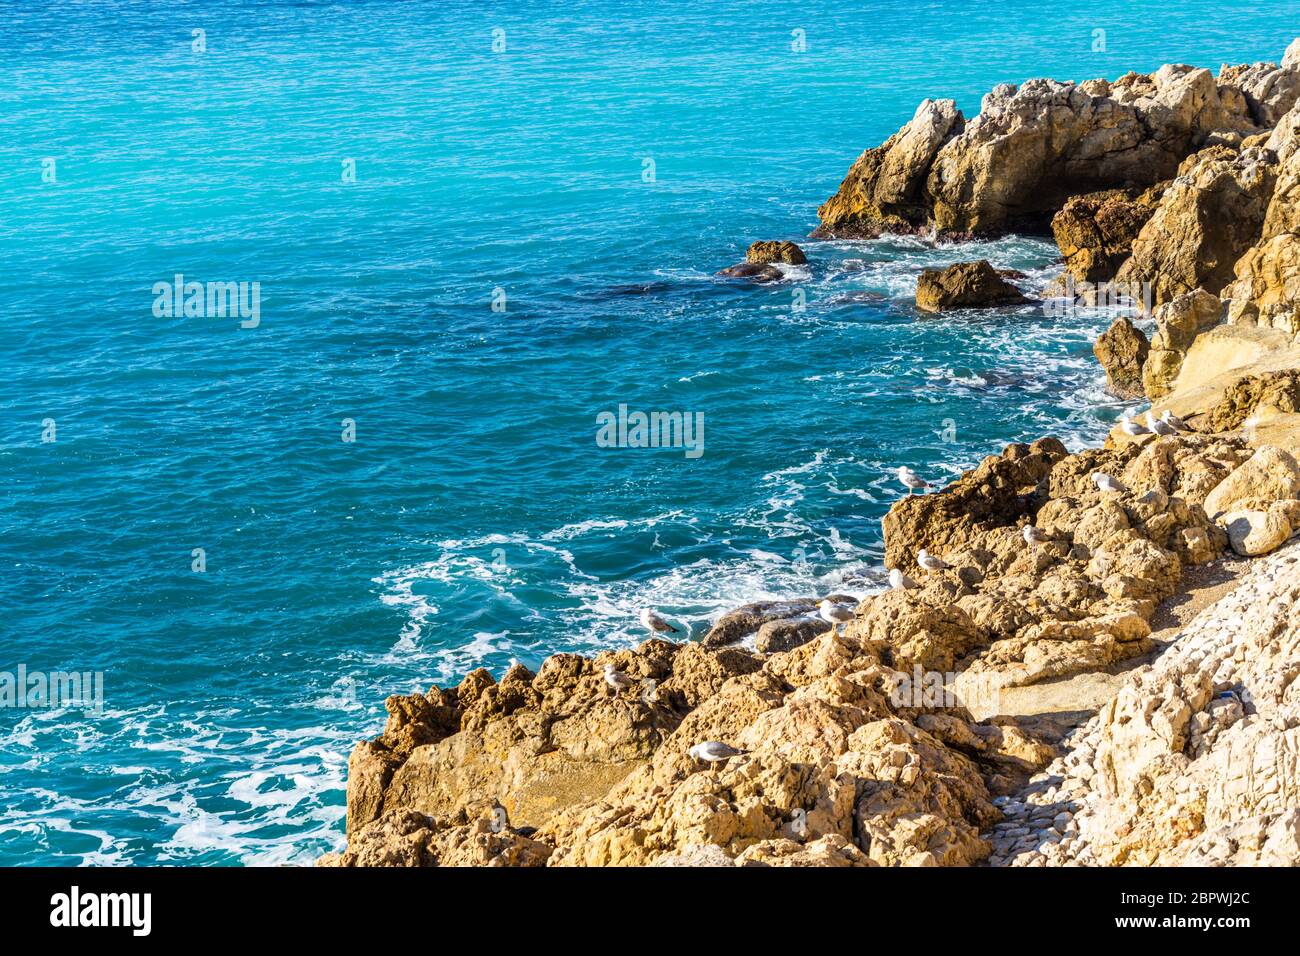 Das türkisfarbene Wasser des Mittelmeers lambt die Felsen in der Nähe von Nizza Waterfront, Frankreich Stockfoto